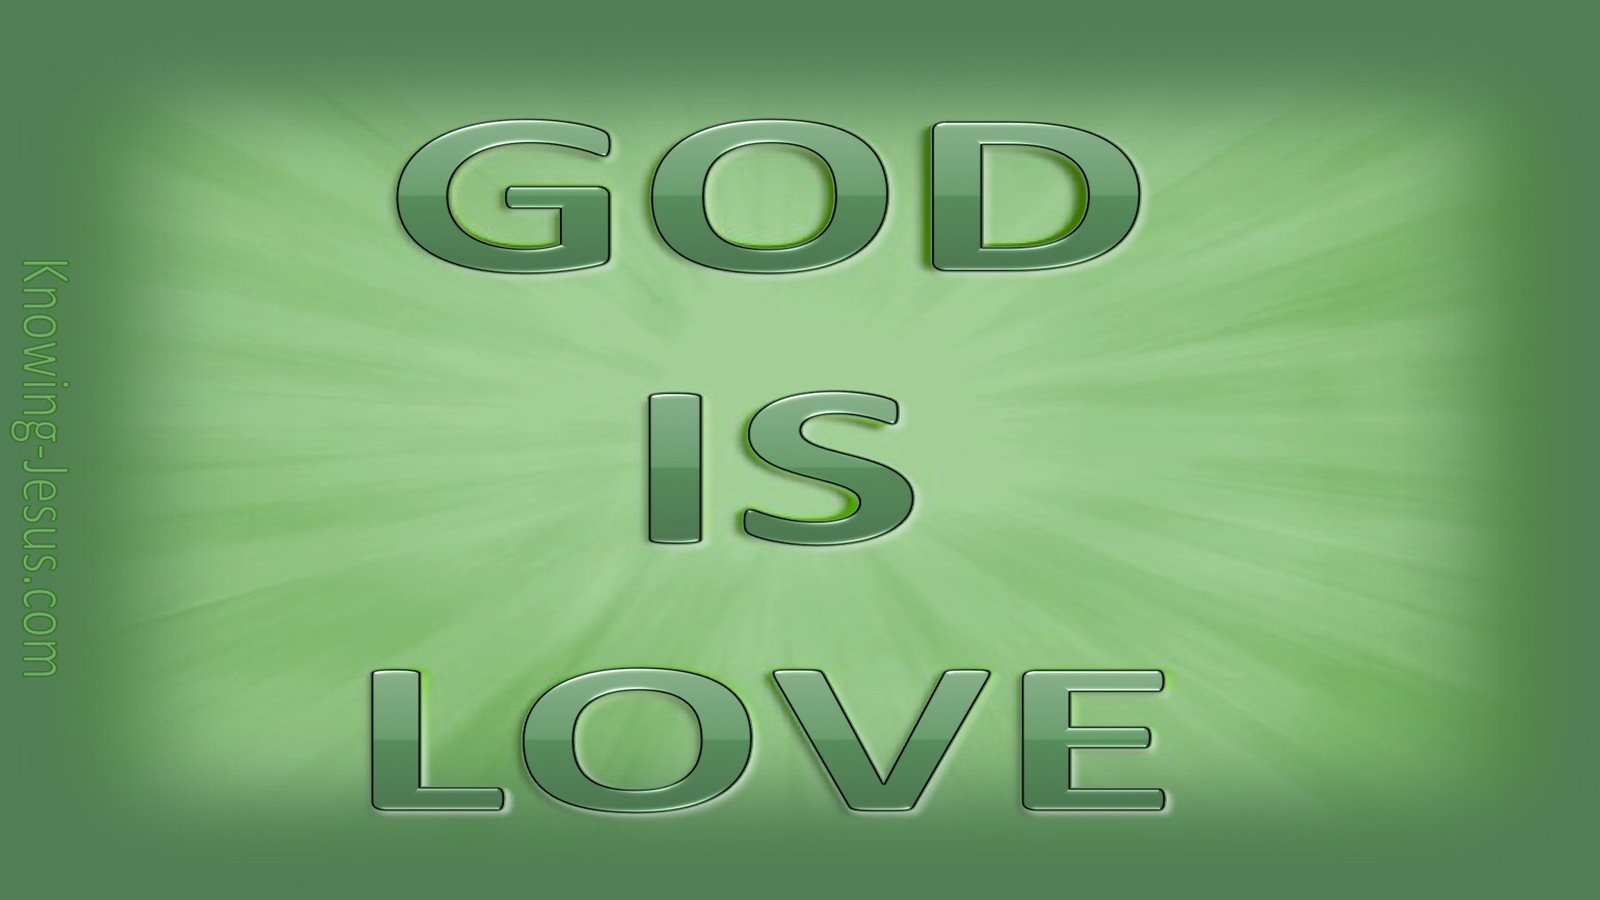 1 John 4:8 God is Love (green)